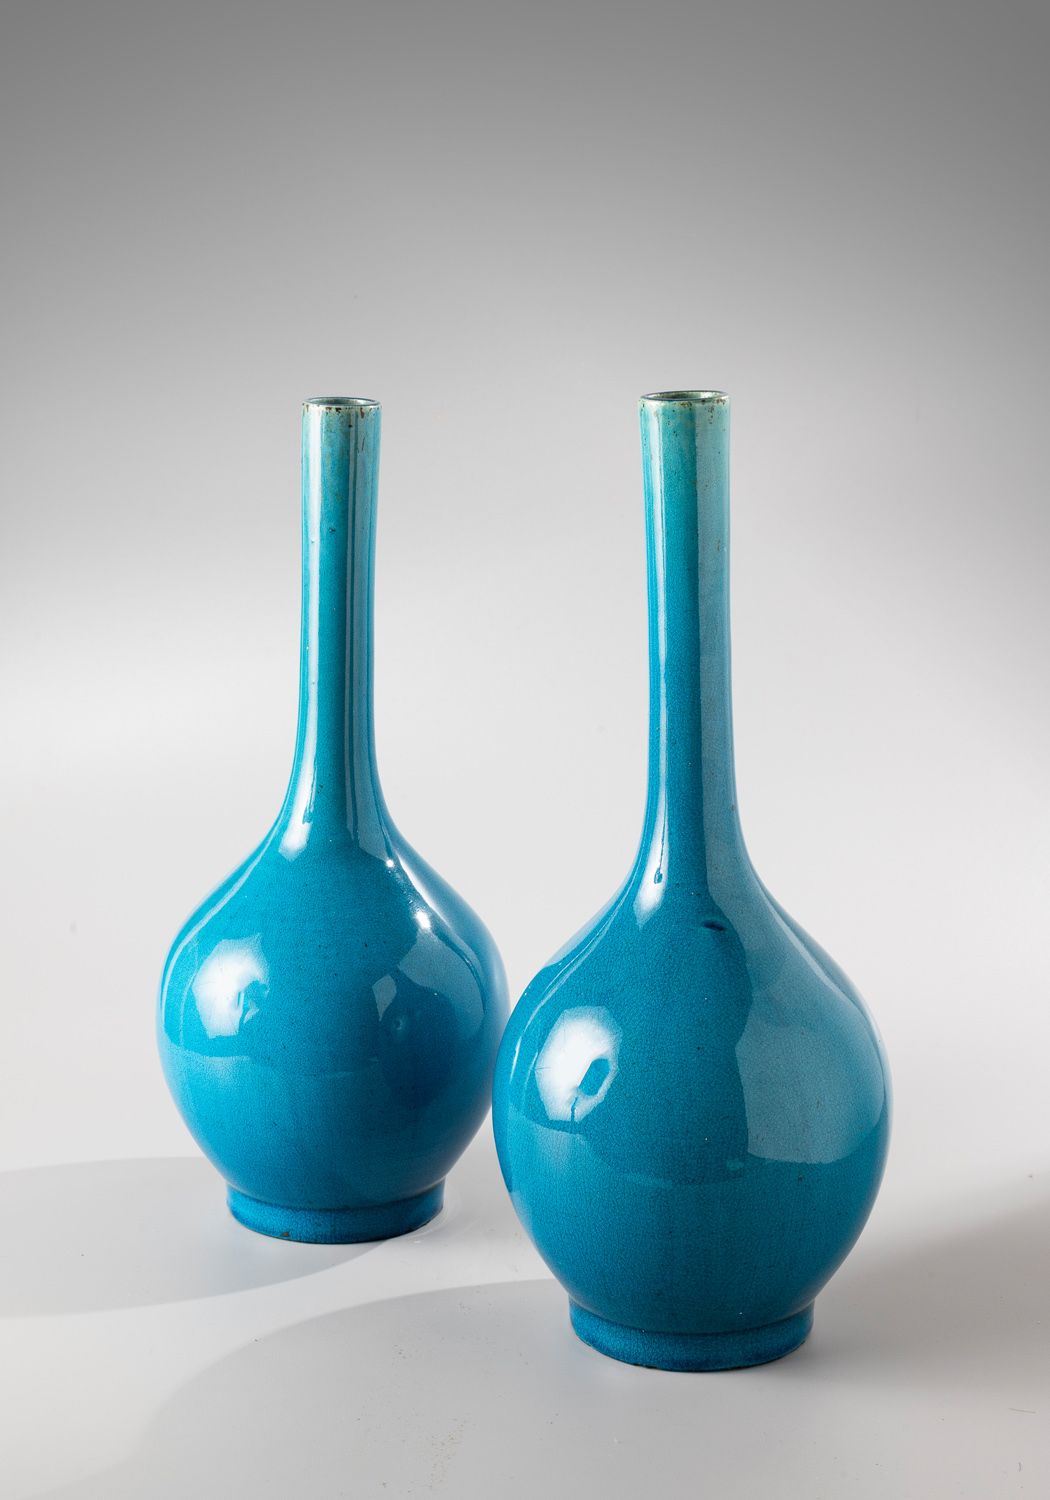 Null CHINA, siglo XVIII

Jarrón de cerámica esmaltada azul turquesa con cuello l&hellip;